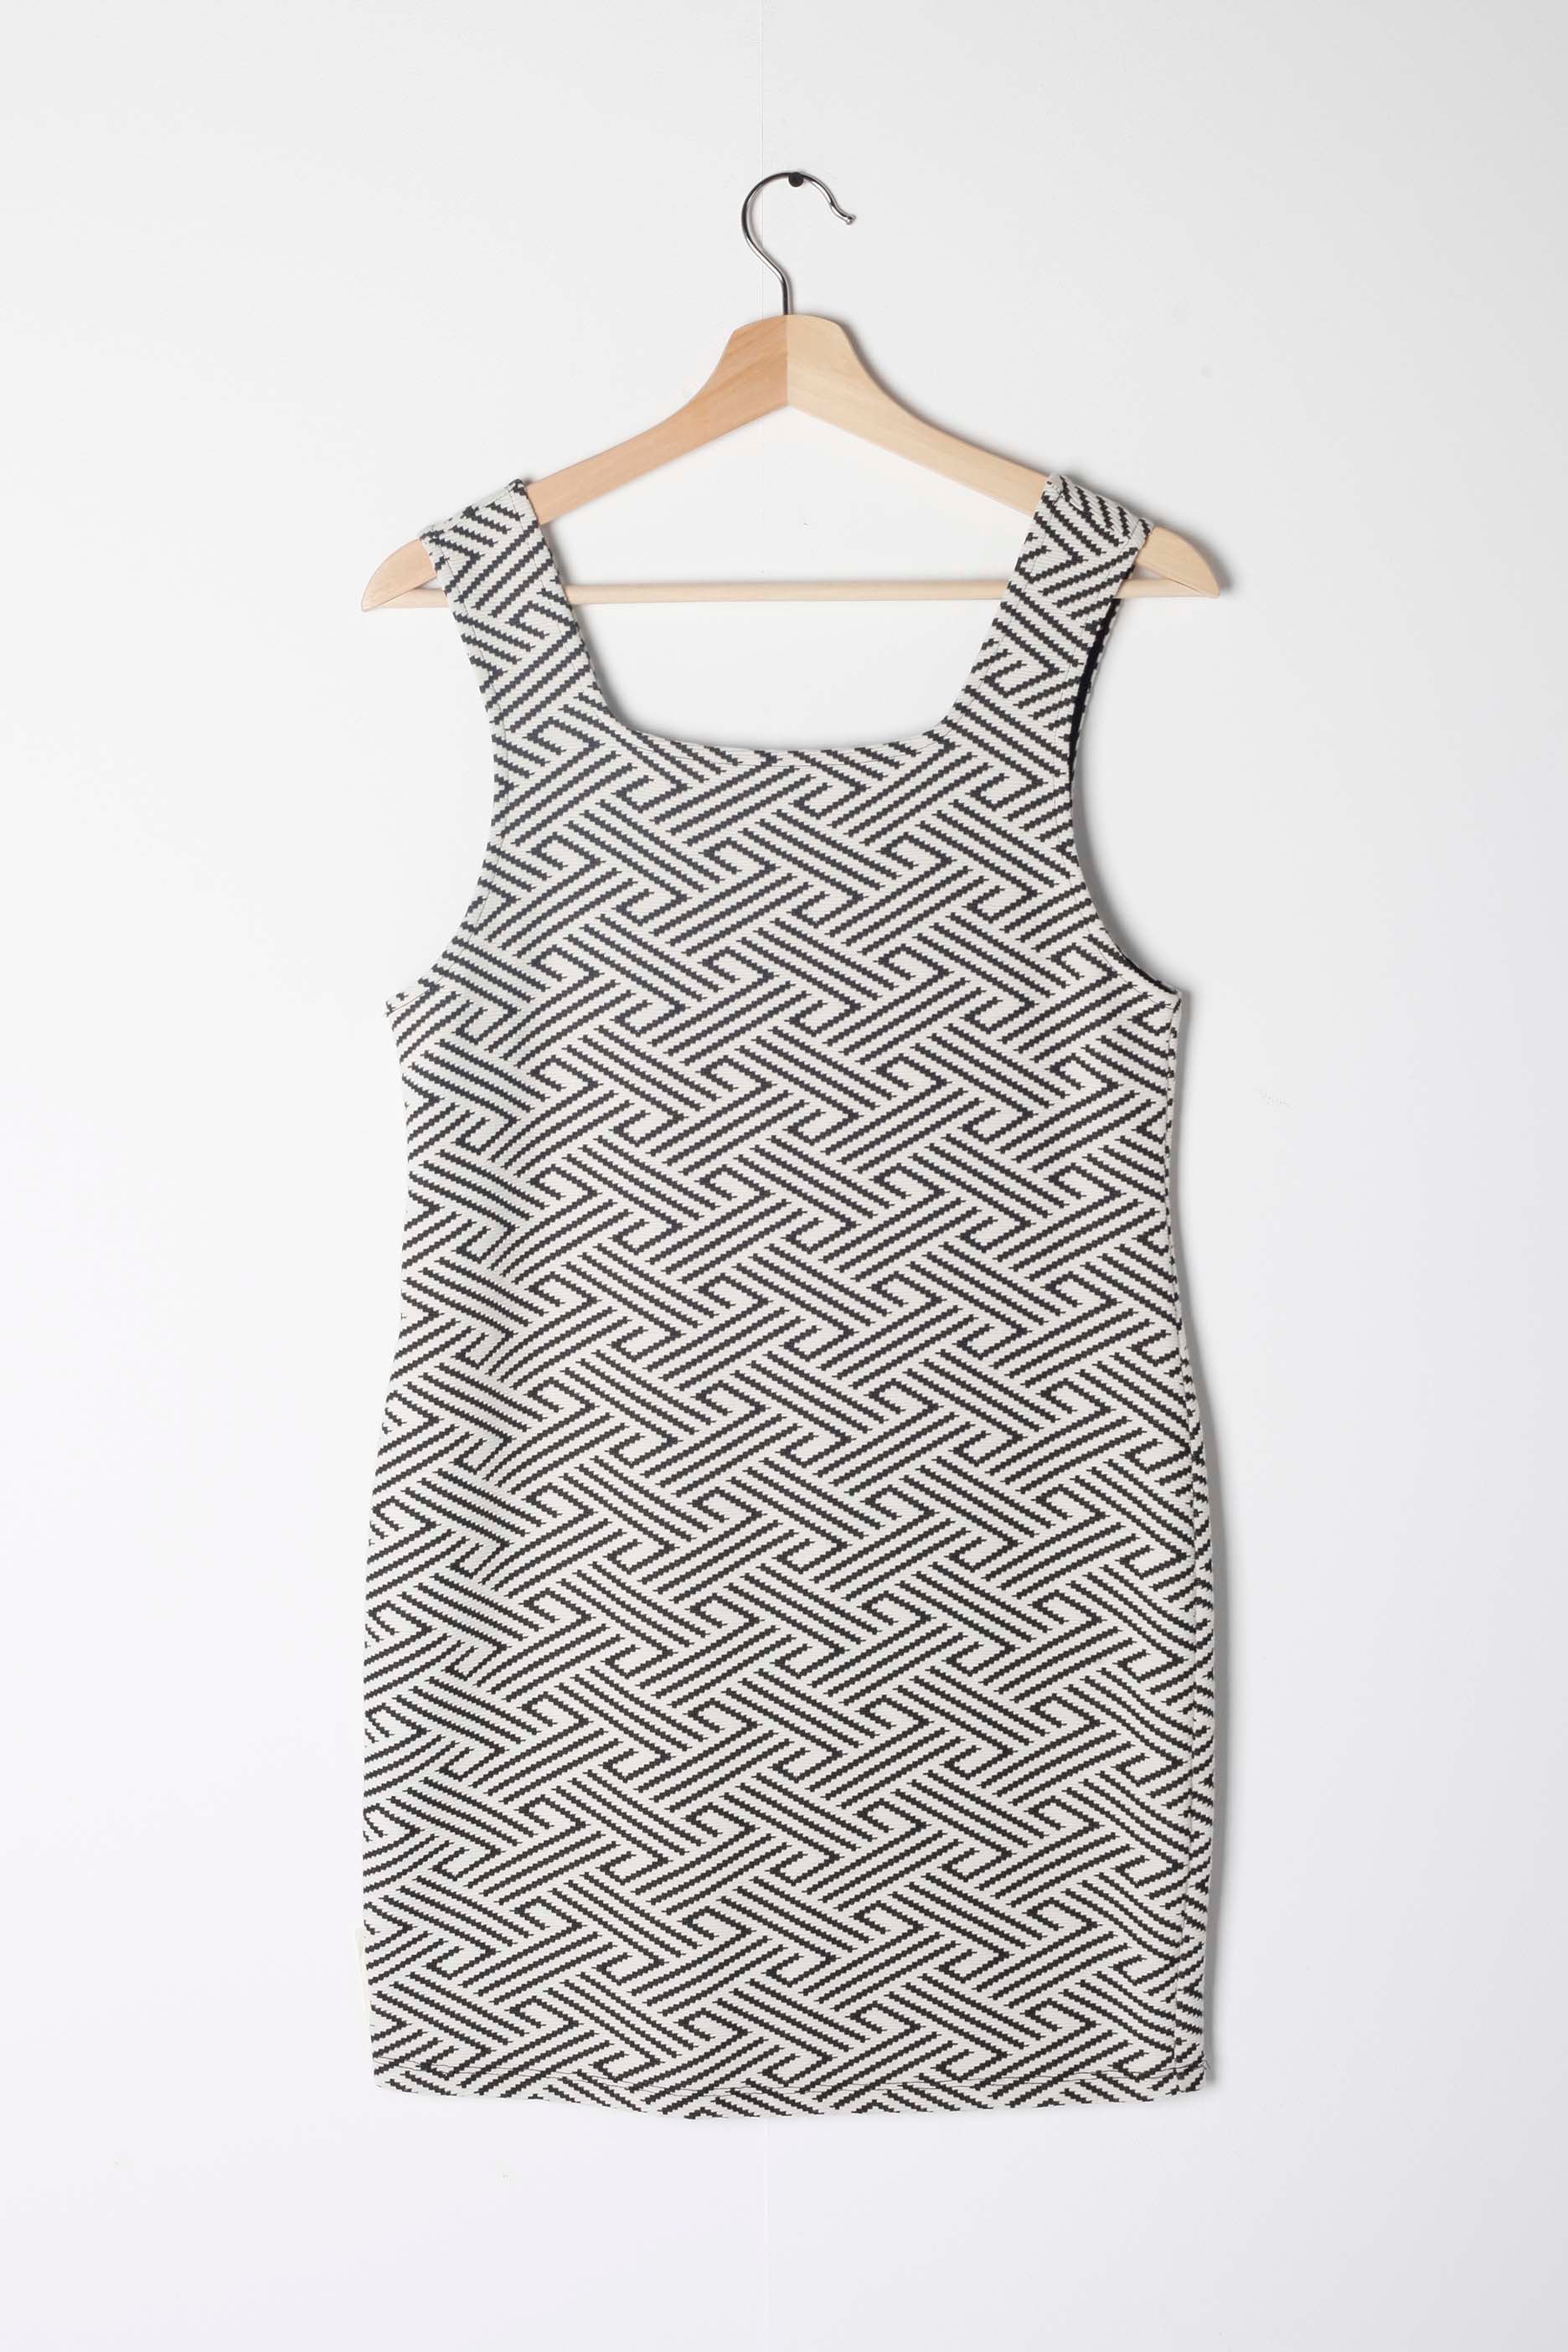 Body-Con Monochrome Print Mini Dress